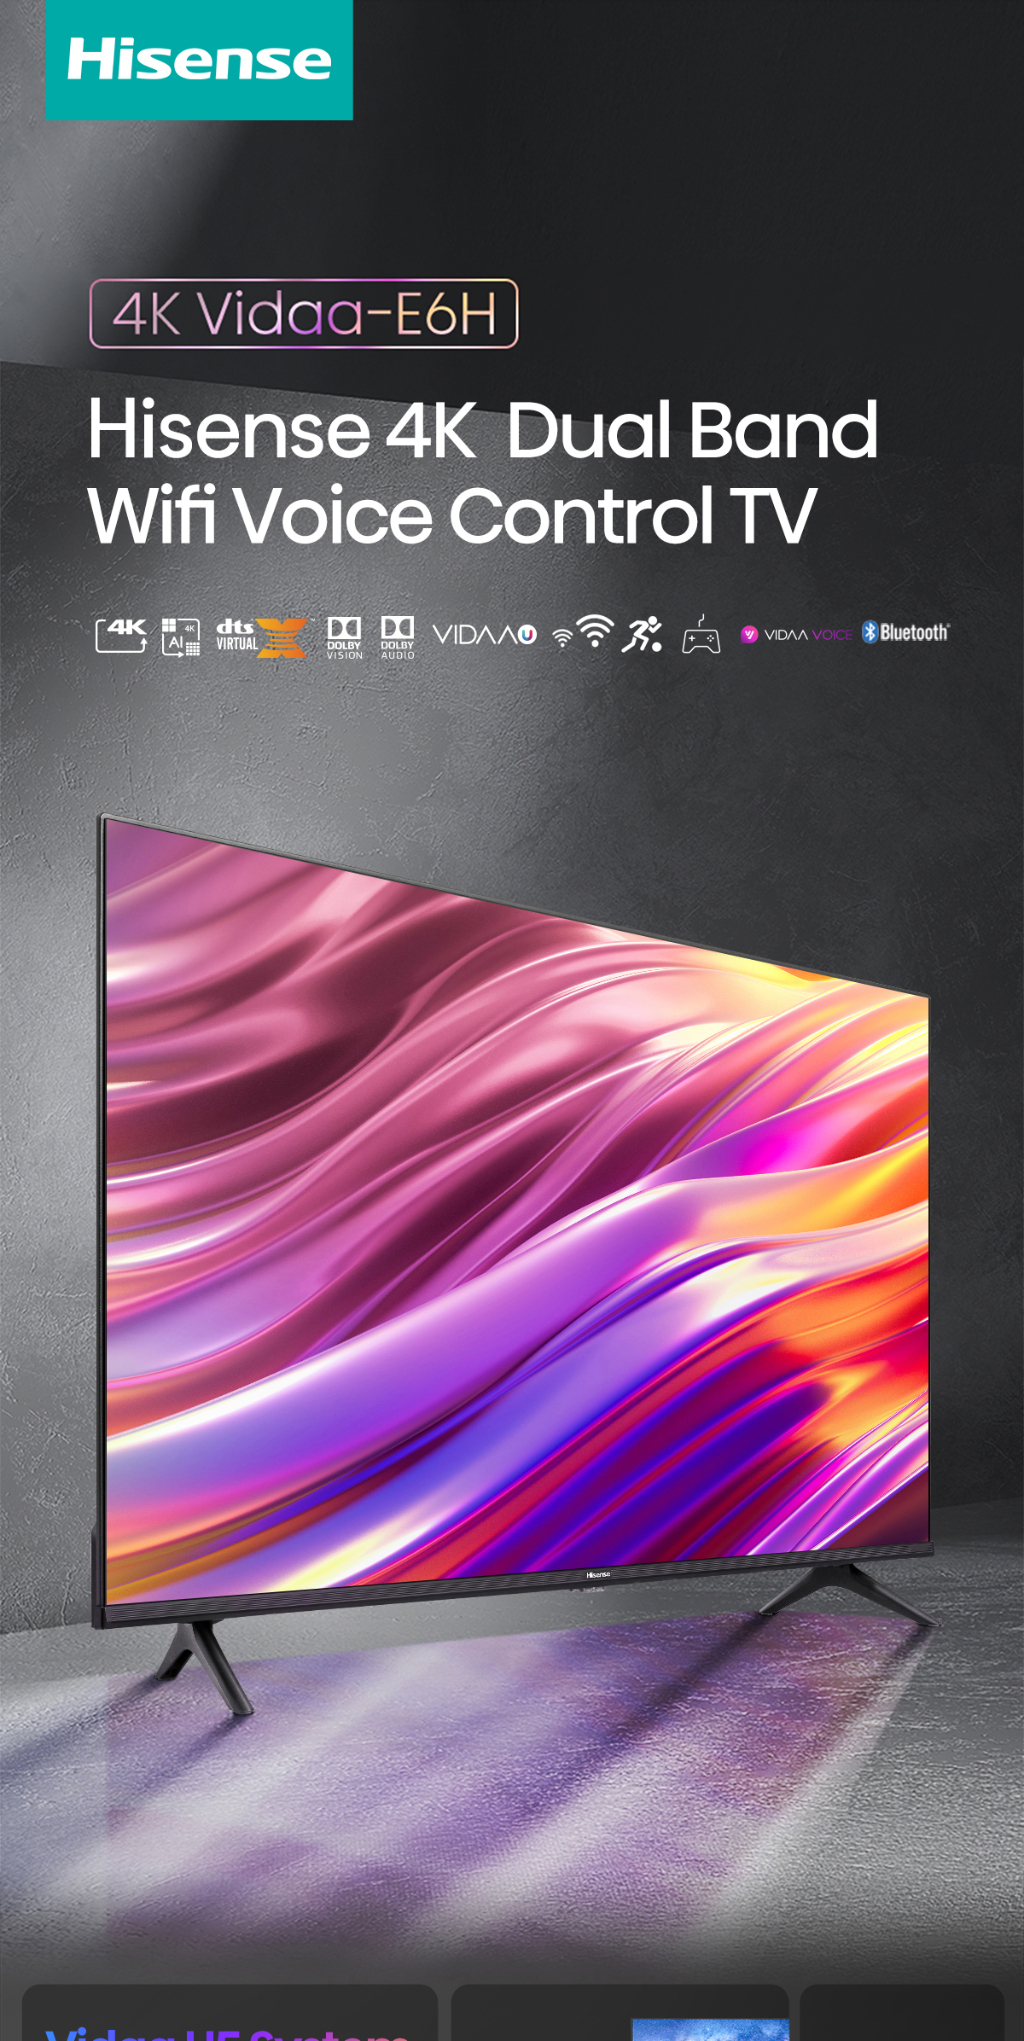 รูปภาพเพิ่มเติมของ Hisense TV ทีวี 55 นิ้ว 4K Ultra HD Smart TV รุ่น 55E6H VIDAA U5 Voice Control Dolby Vision Netflix YouTube 2.4G+5G WIFI Build in /DVB-T2 / USB2.0 / HDMI /AV